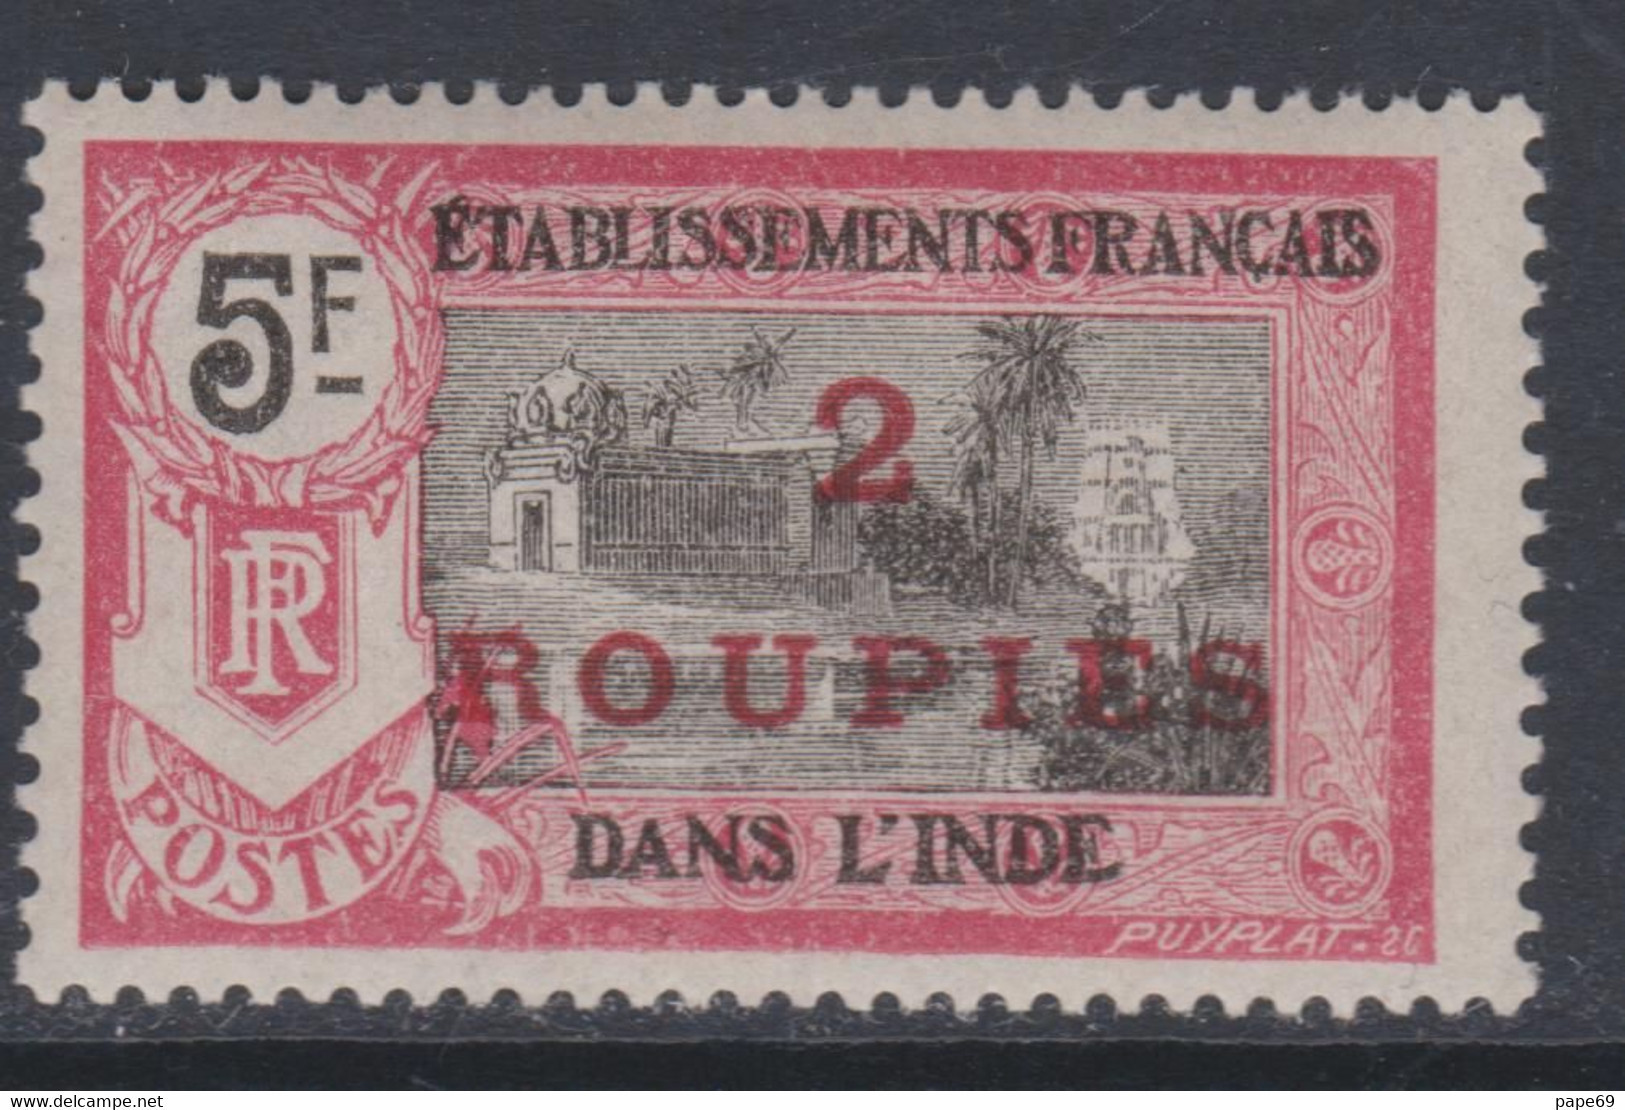 Inde N° 76 X Partie De  Série : 2 R. Sur 2 F. Rose Et Noir Trace De Charnière Sinon TB - Used Stamps